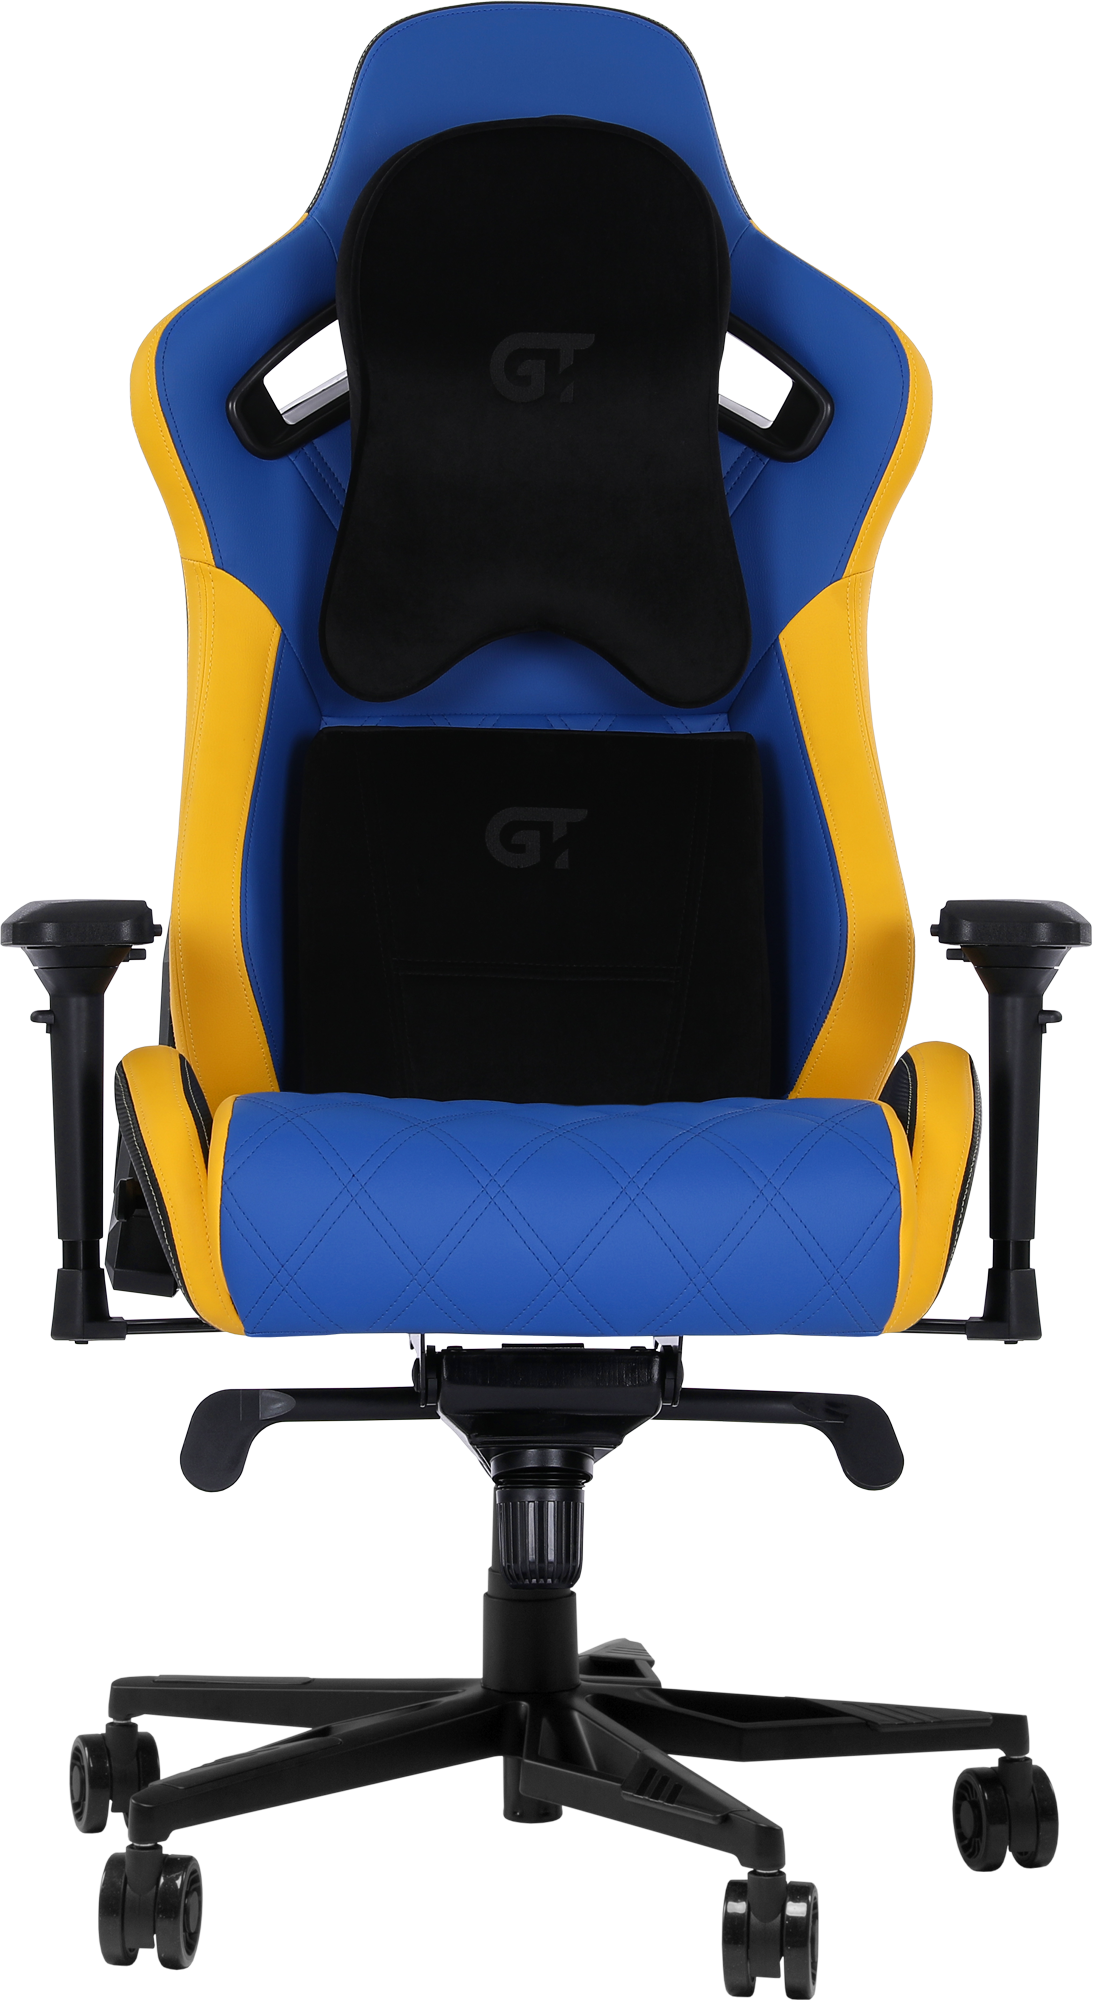 Геймерское кресло GT Racer синее с желтым (X-0724 Blue/Yellow) - фото 2